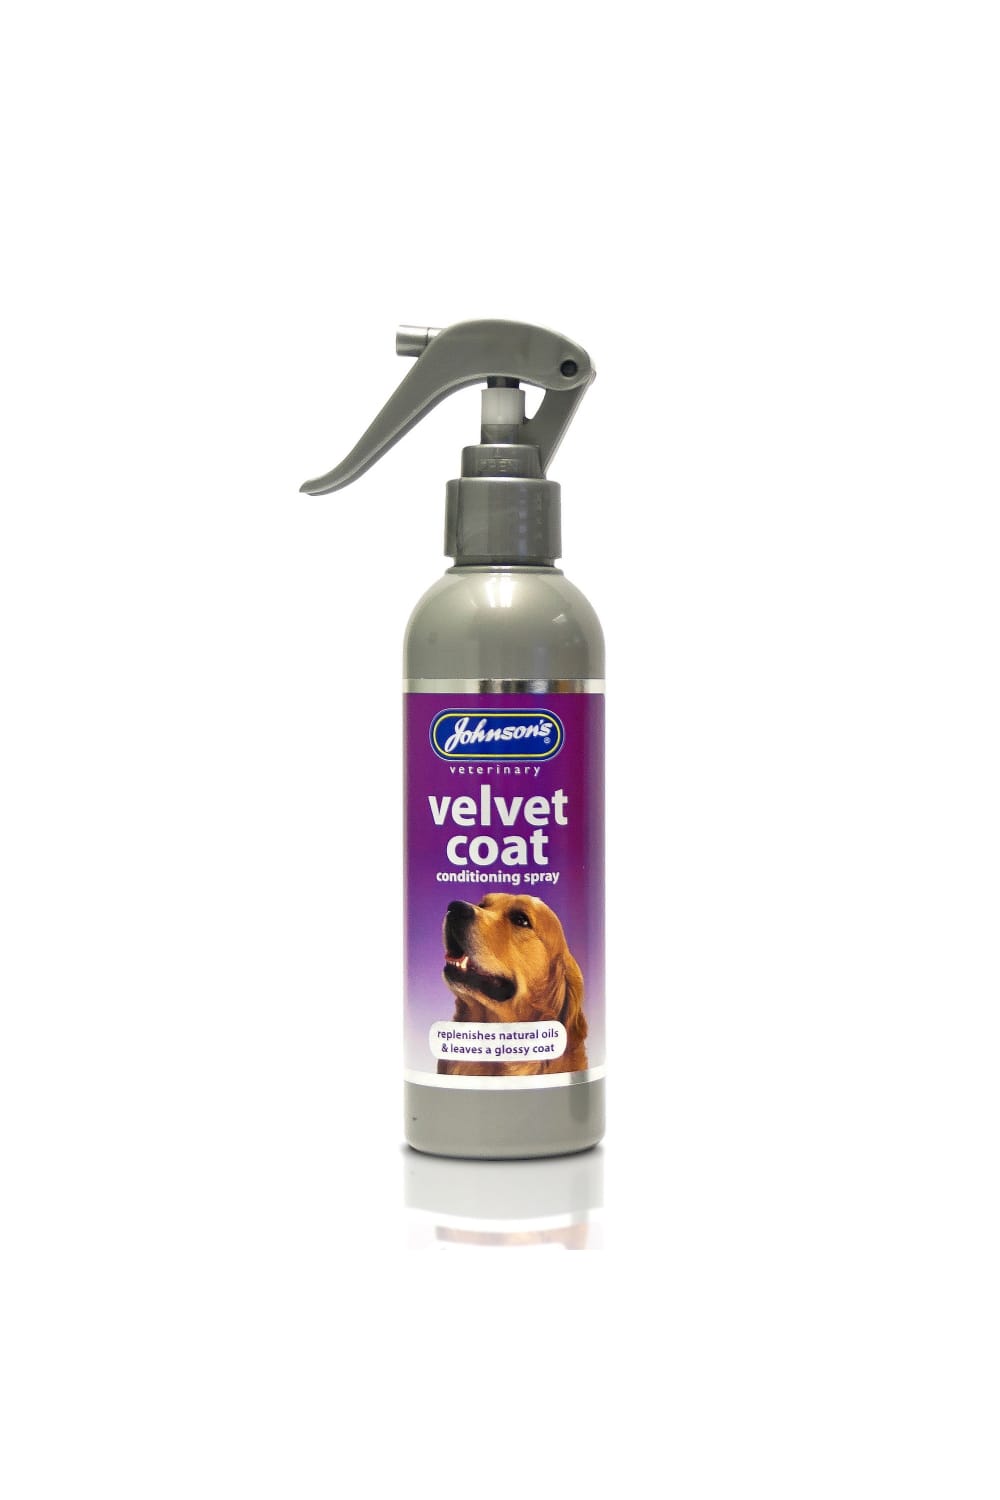 Johnsons Veterinary Velvet Coat Dog Liquid Conditioning Spray (May Vary) (5 fl oz)